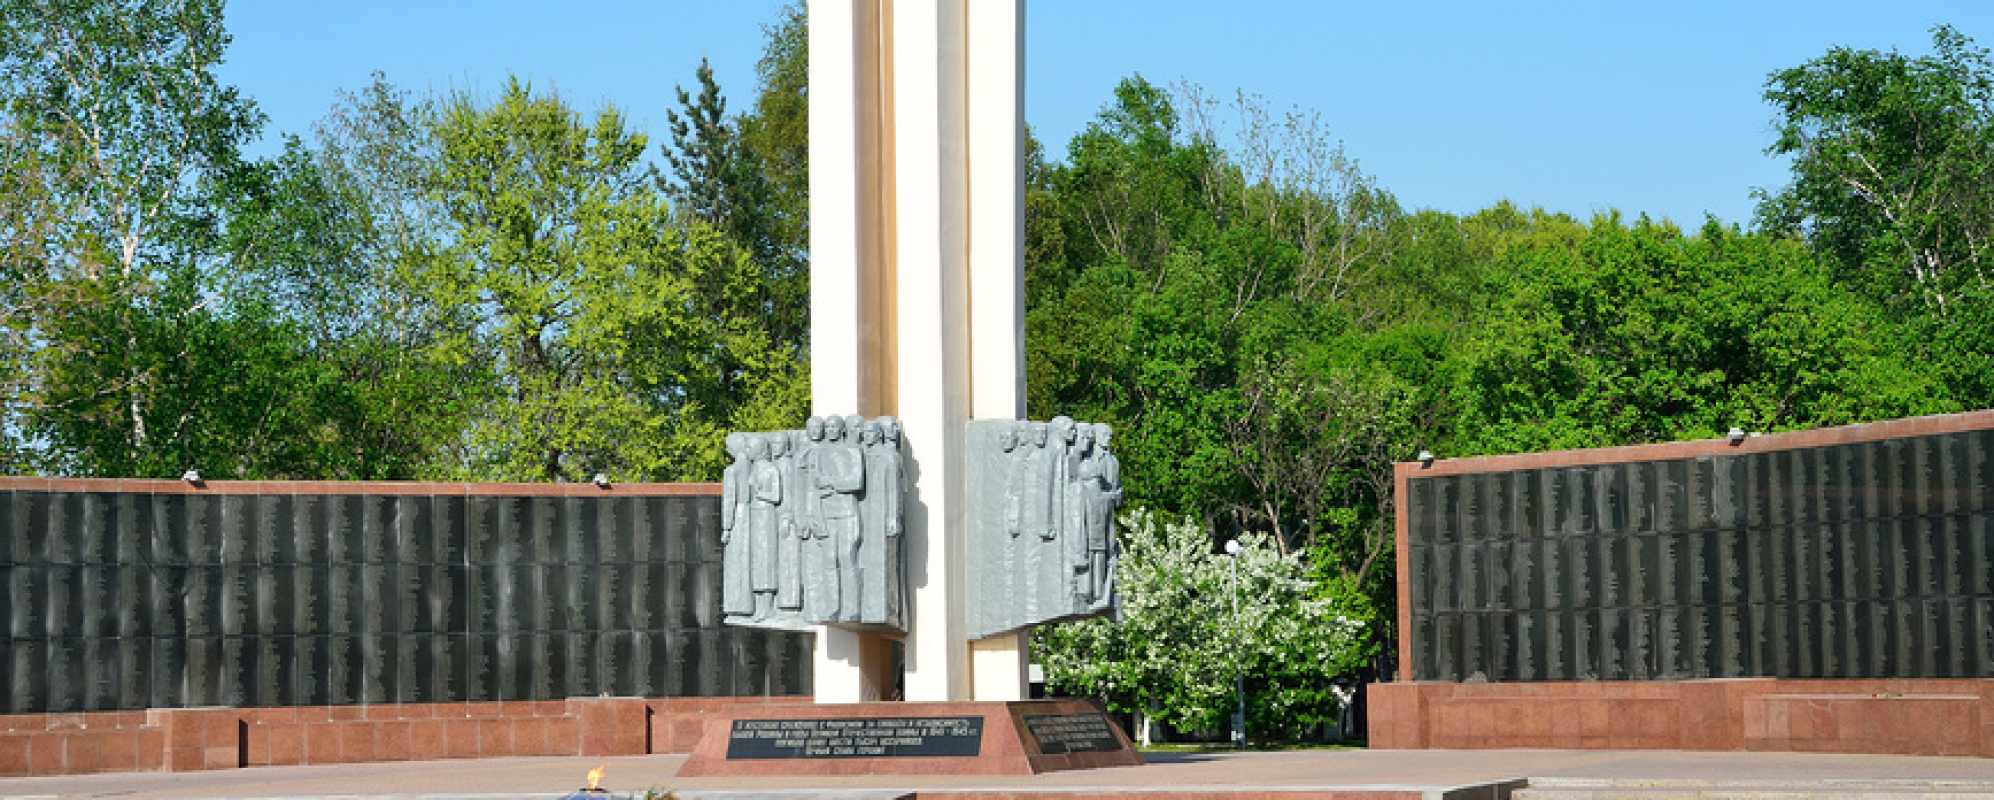 Фотографии достопримечательности Монумент воинам-уссурийцам, павшим в сражениях Великой Отечественной войны 1941-1945 гг.